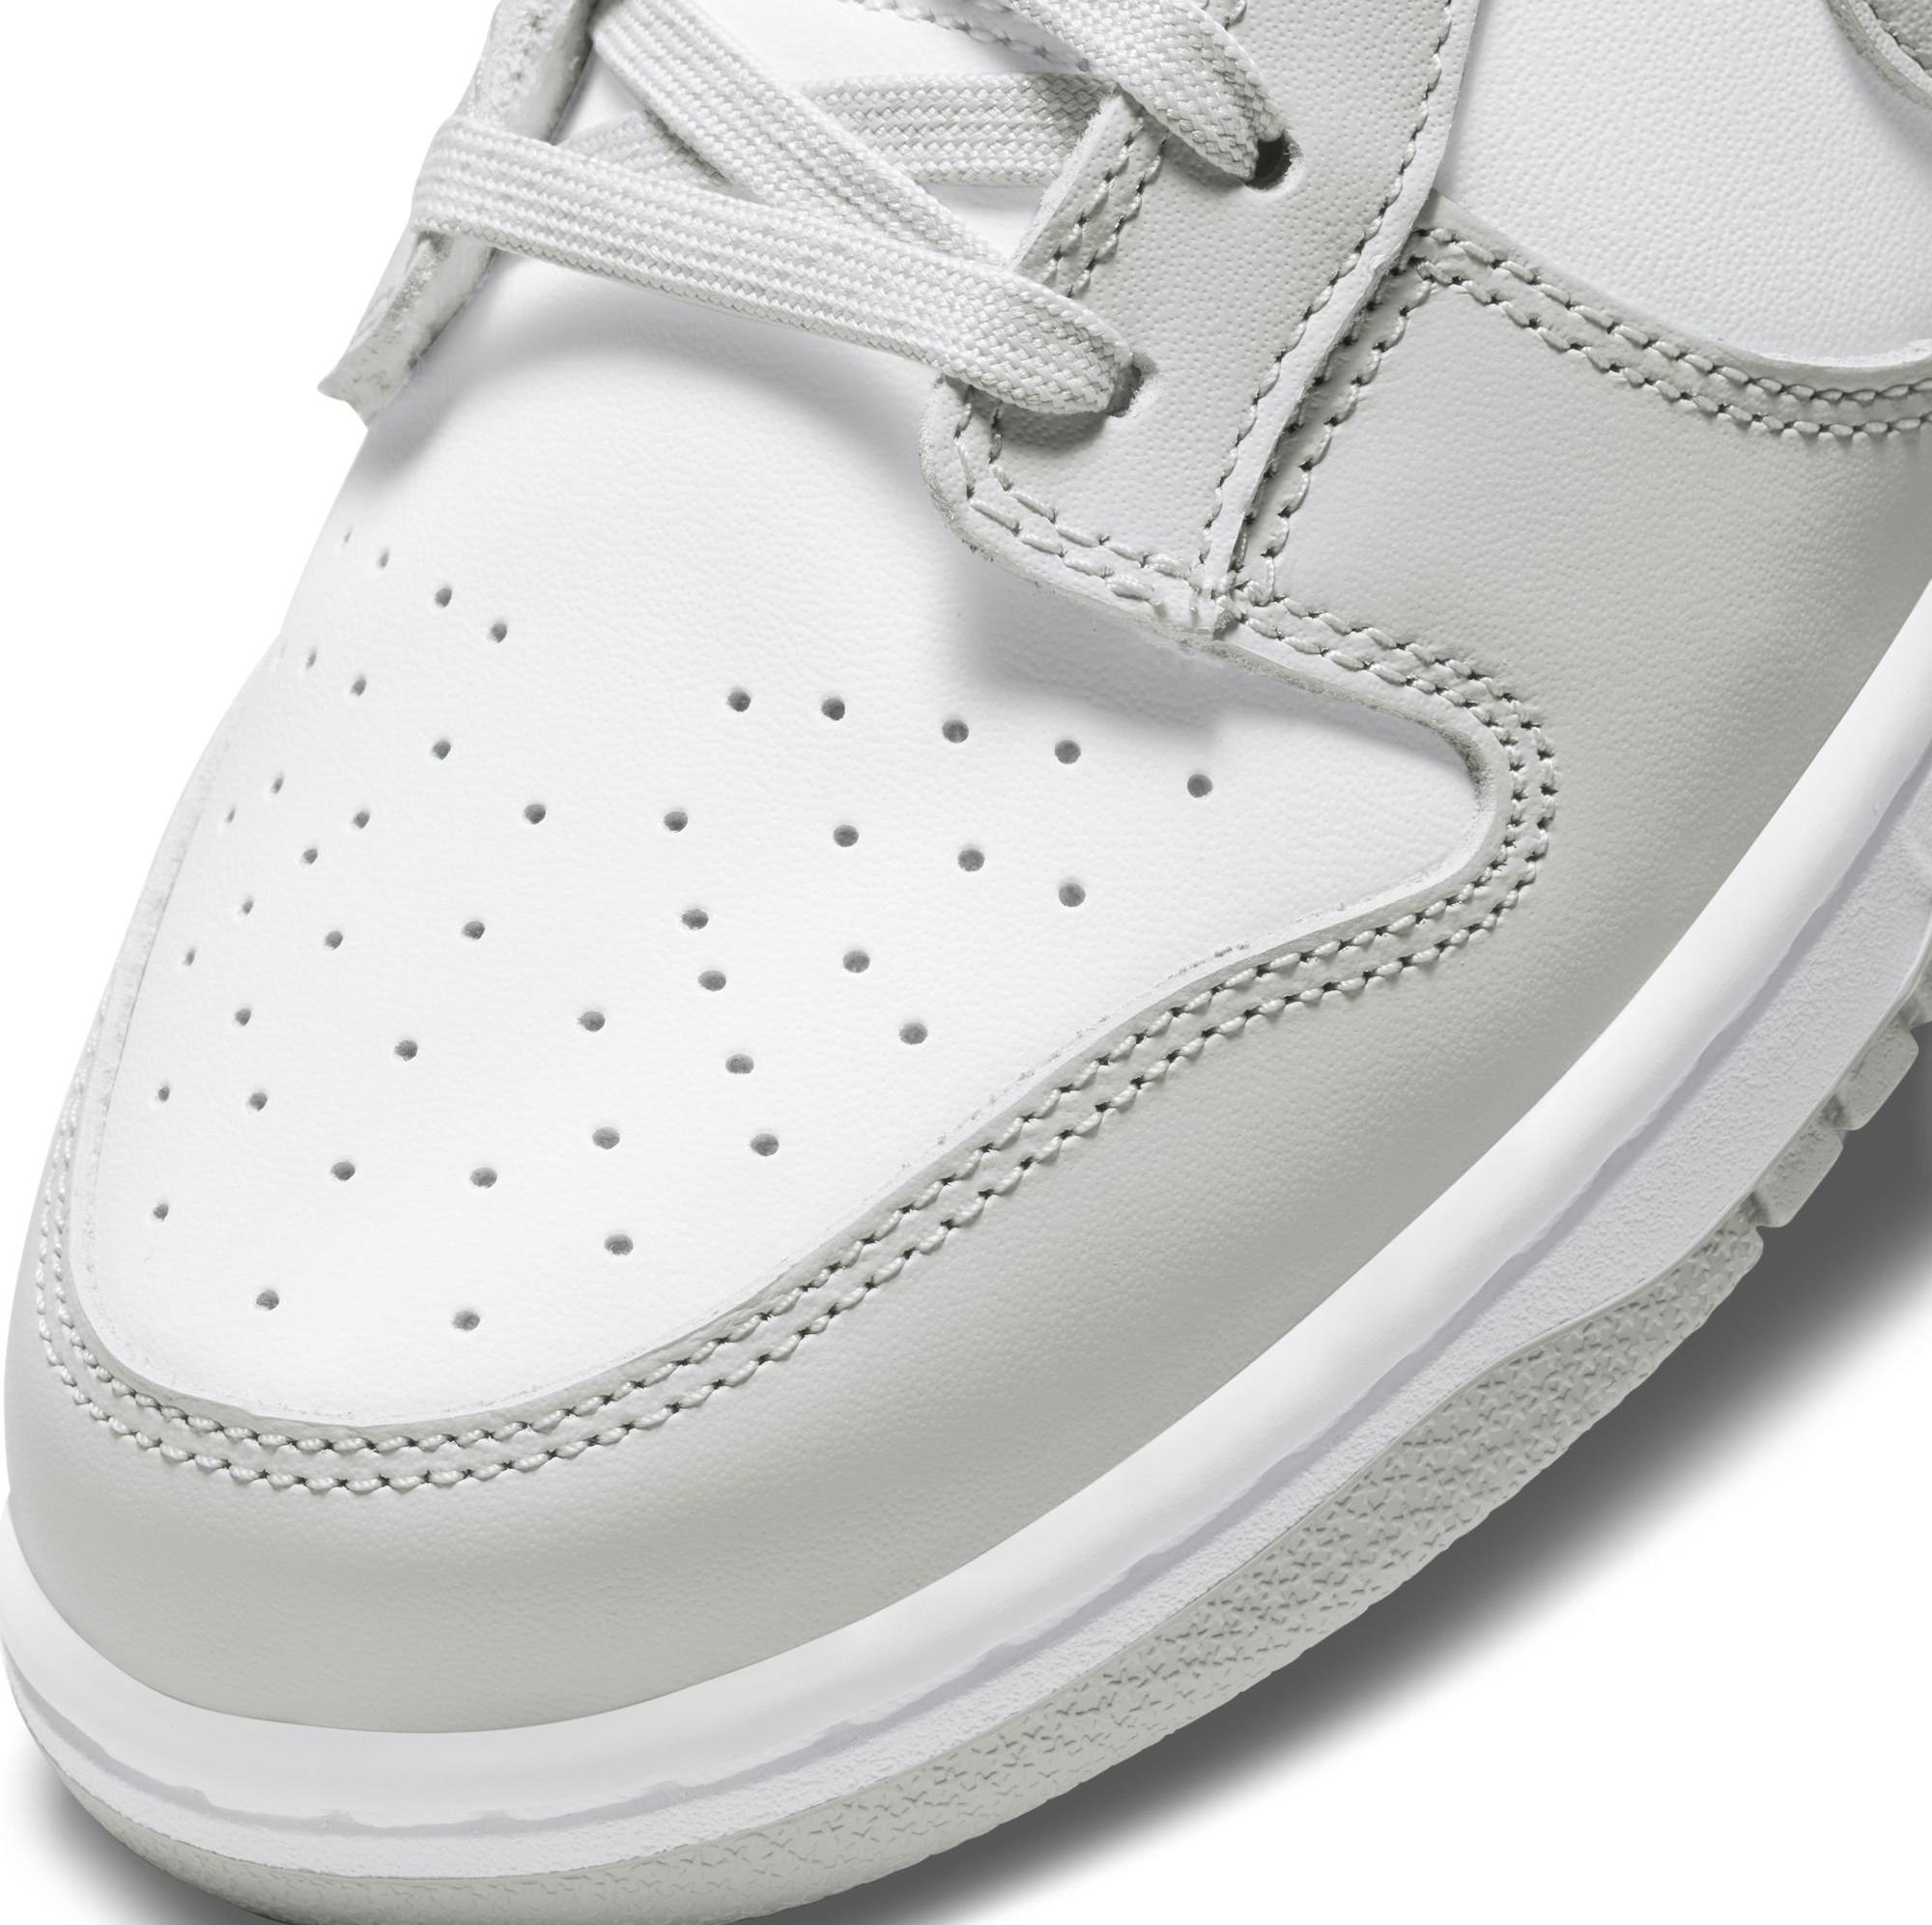 Sneakers Release – Nike Dunk Low “Grey Fog” Men's Shoe Arriving 9/15